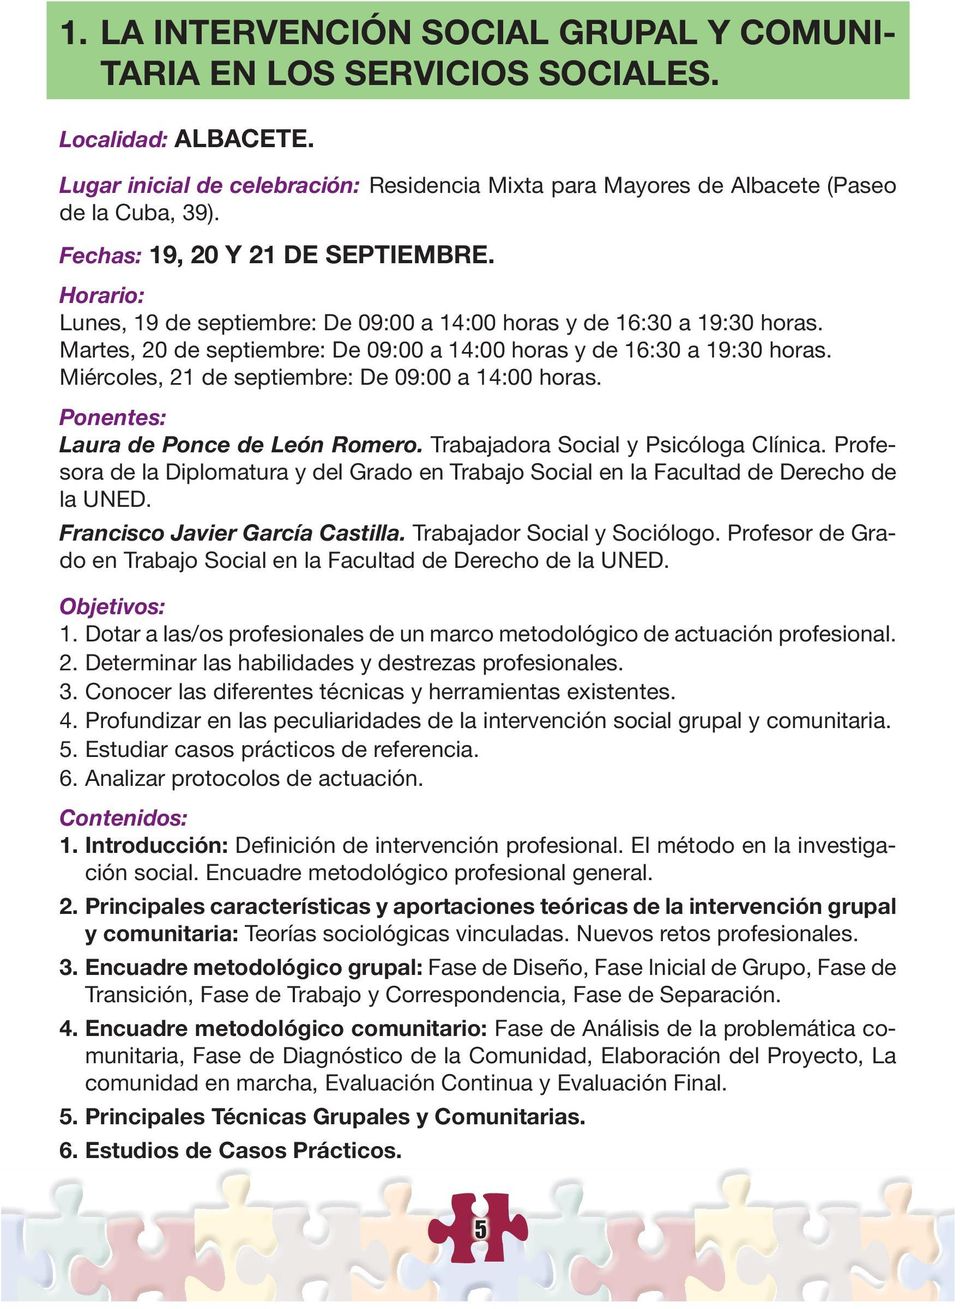 Miércoles, 21 de septiembre: De 09:00 a 14:00 horas. Ponentes: Laura de Ponce de León Romero. Trabajadora Social y Psicóloga Clínica.